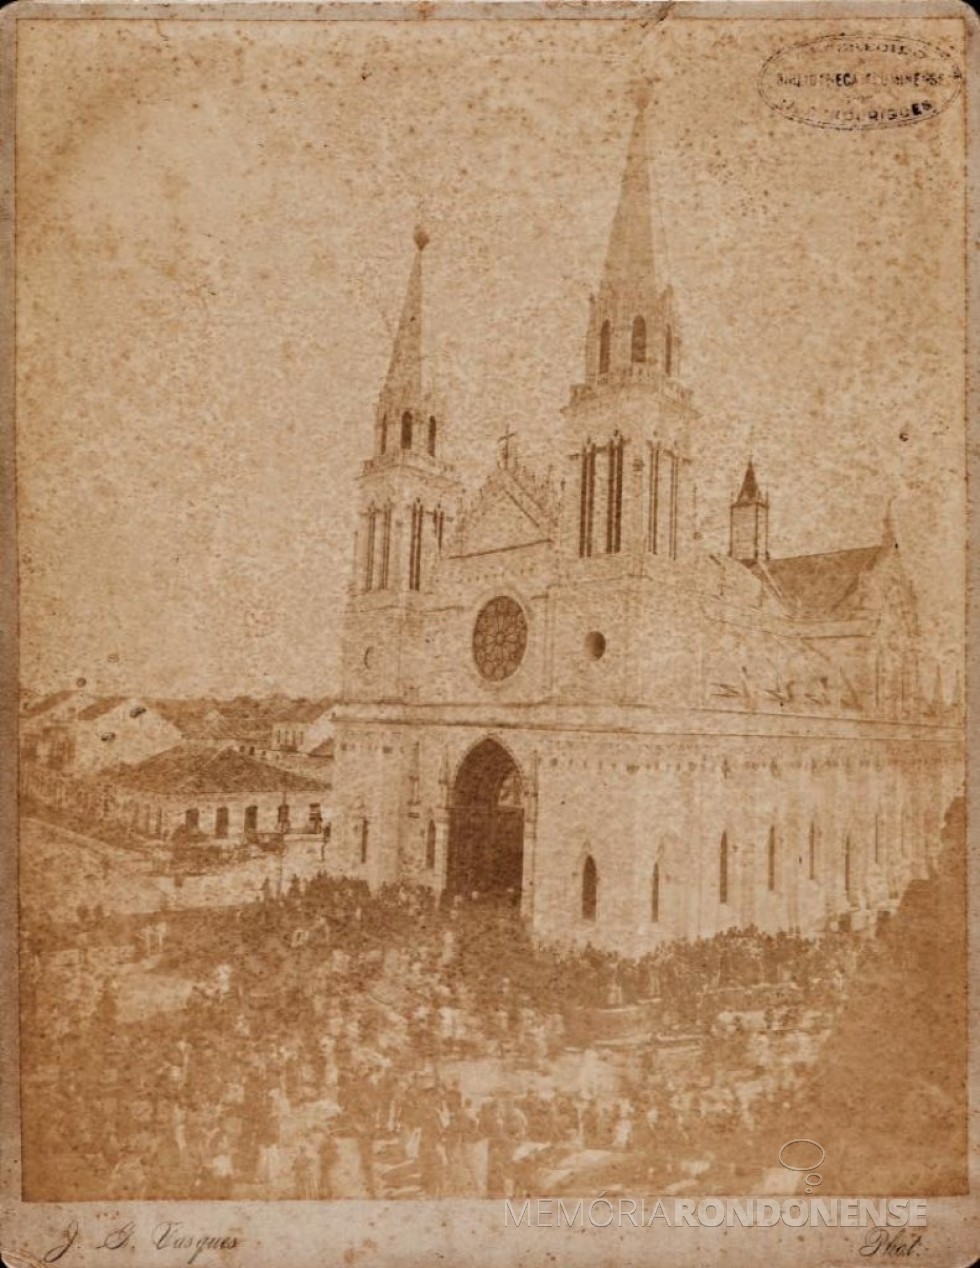 || Inauguração da Catedral  atual Basílica Menor de Curitiba, em setembro de 1893.
Imagem: Acervo  bndigitado.bn.org.br/ Paulo Roberto Grani/ Facebook - crédito:  J.G. Vasquez  - FOTO 2 -